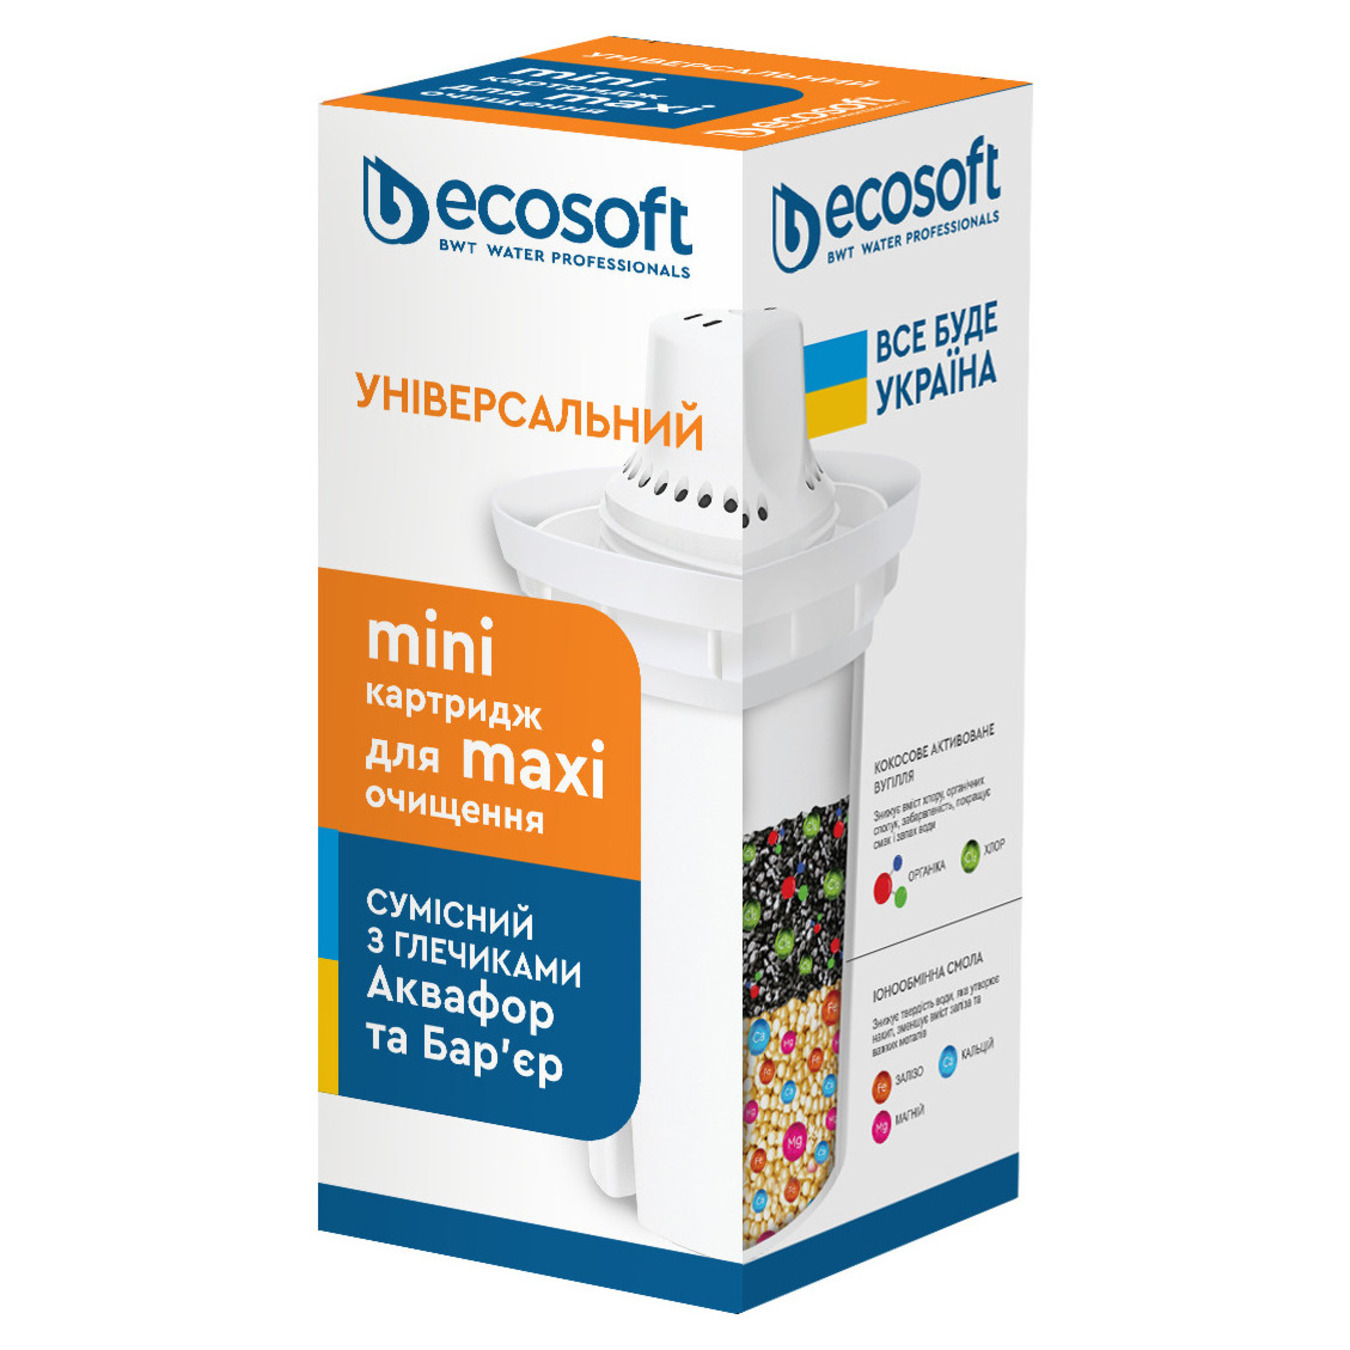 Universal cartridge Ecosoft 1 pc